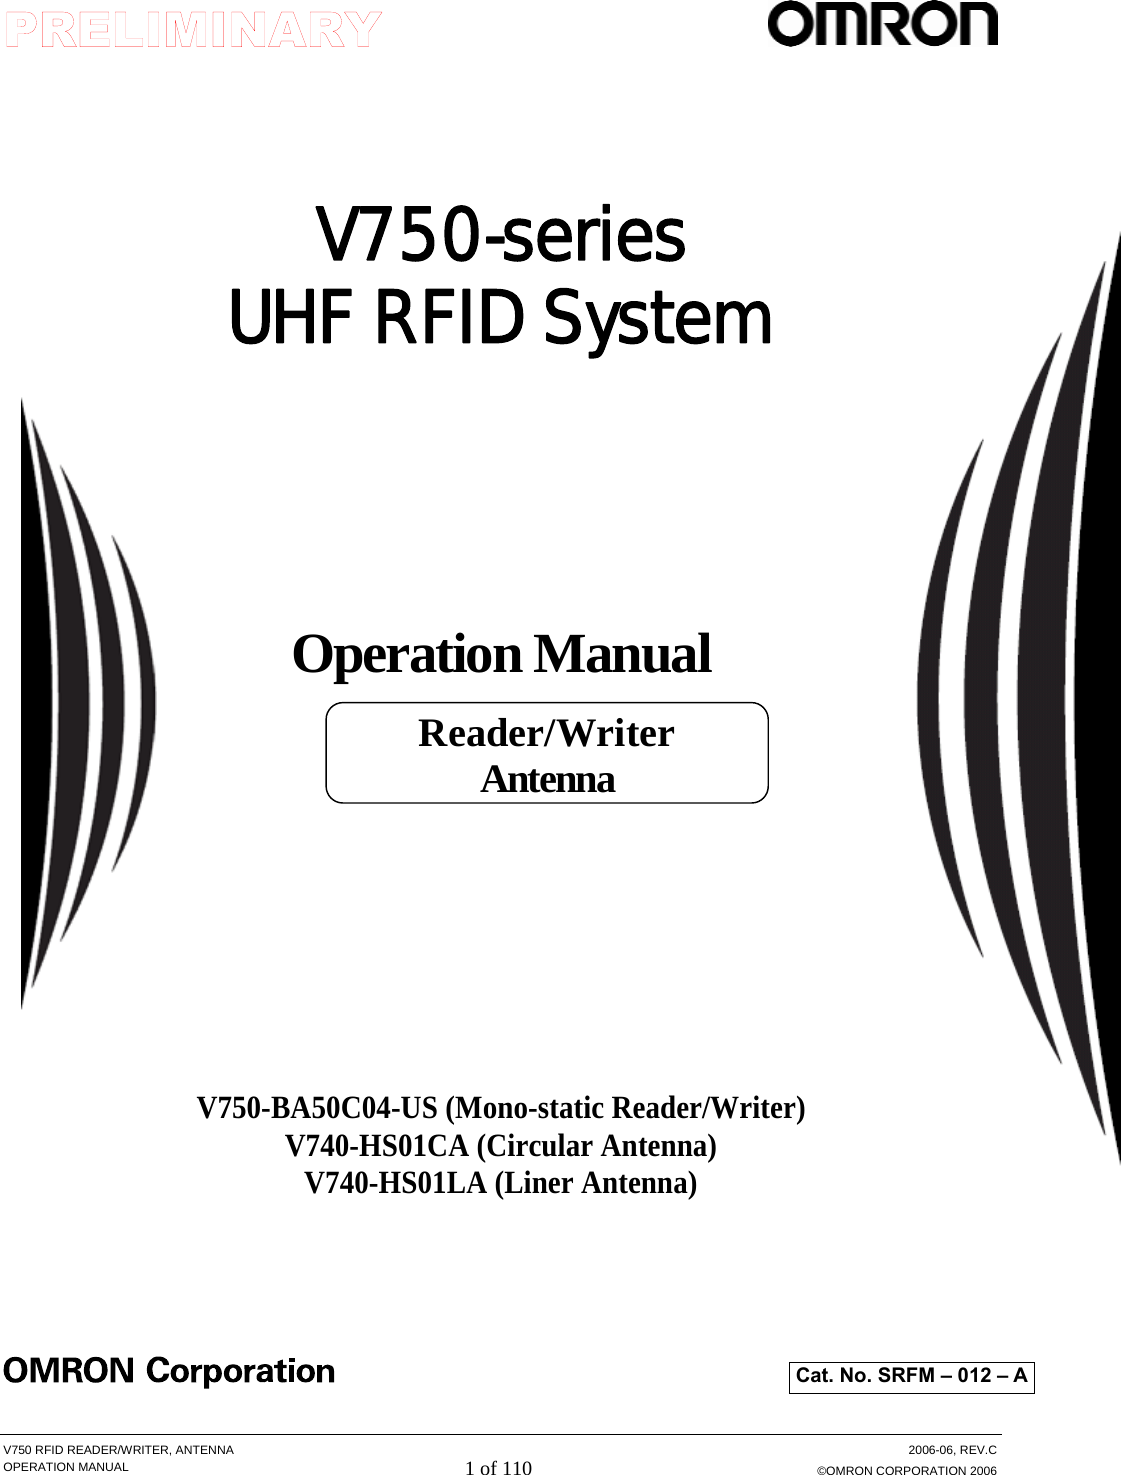  V750 RFID READER/WRITER, ANTENNA  2006-06, REV.C OPERATION MANUAL 1 of 110 ©OMRON CORPORATION 2006    V750-series UHF RFID System     Operation Manual         V750-BA50C04-US (Mono-static Reader/Writer) V740-HS01CA (Circular Antenna) V740-HS01LA (Liner Antenna)         Cat. No. SRFM – 012 – A Reader/Writer Antenna